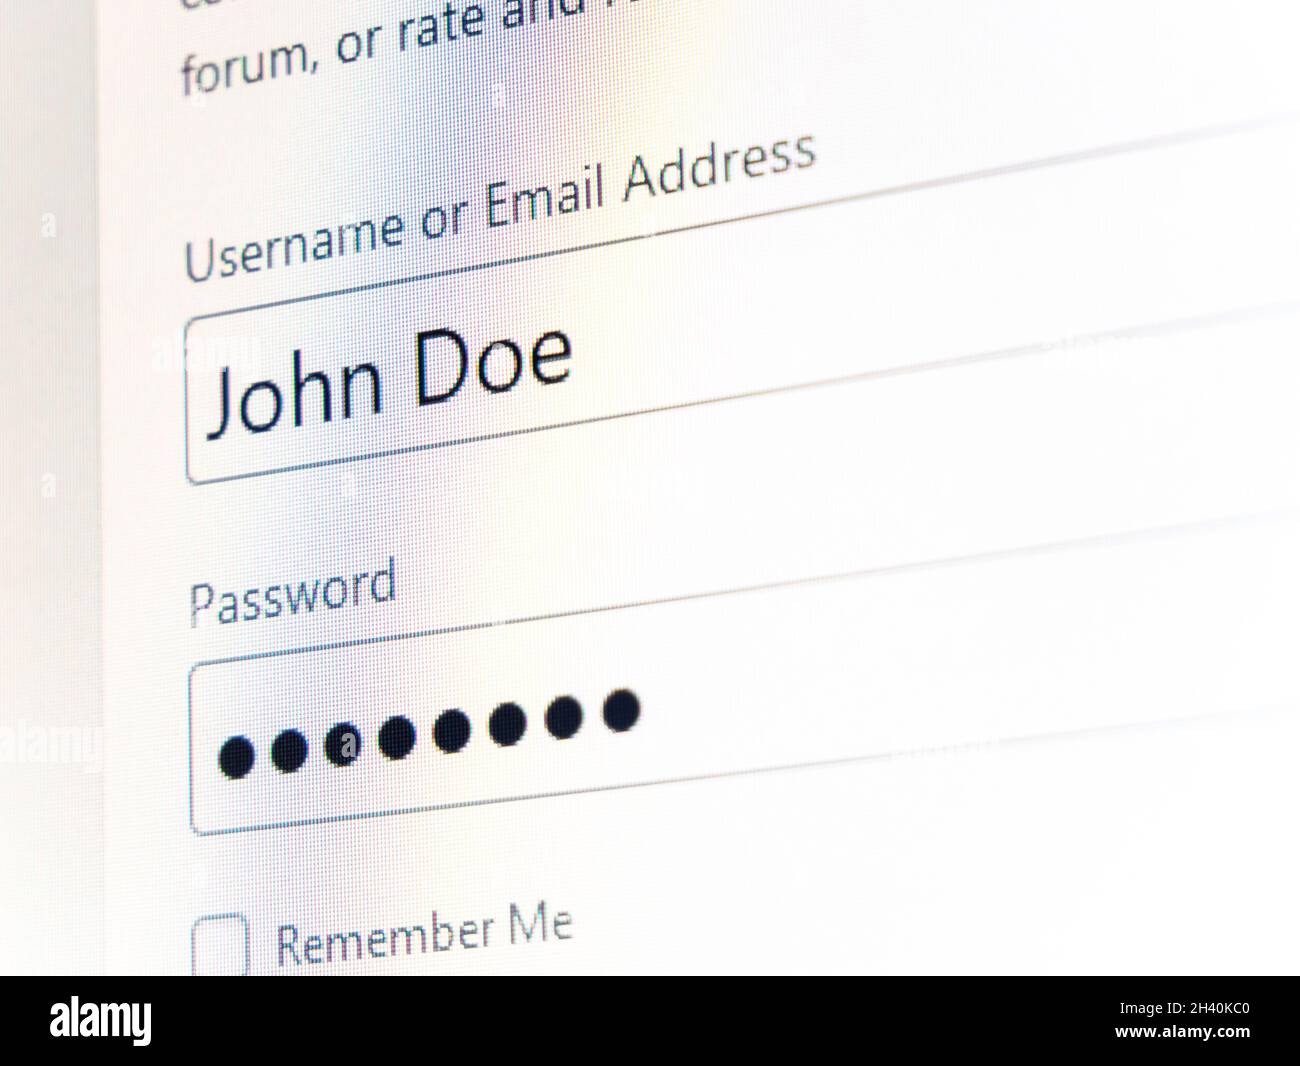 John Doe gefälschte Benutzername Login und Passwort private Konto Anmeldeinformationen Einfache Authentifizierung abstraktes Konzept, niemand, Computer-Monitor-Anzeige Nahaufnahme Stockfoto